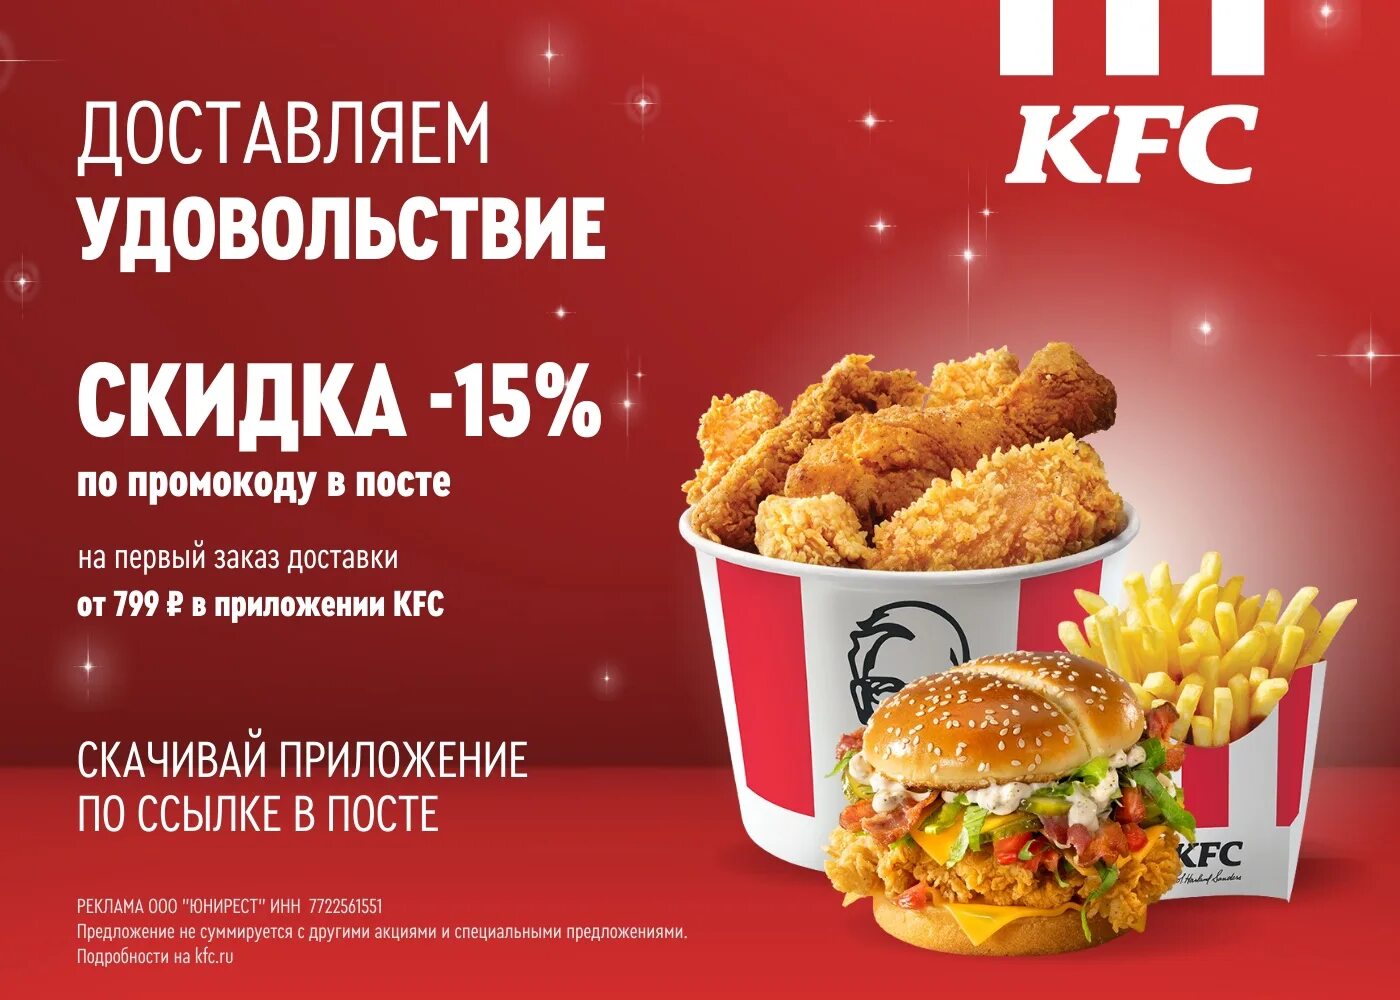 Промокод kfc на первый заказ в приложении. KFC реклама.